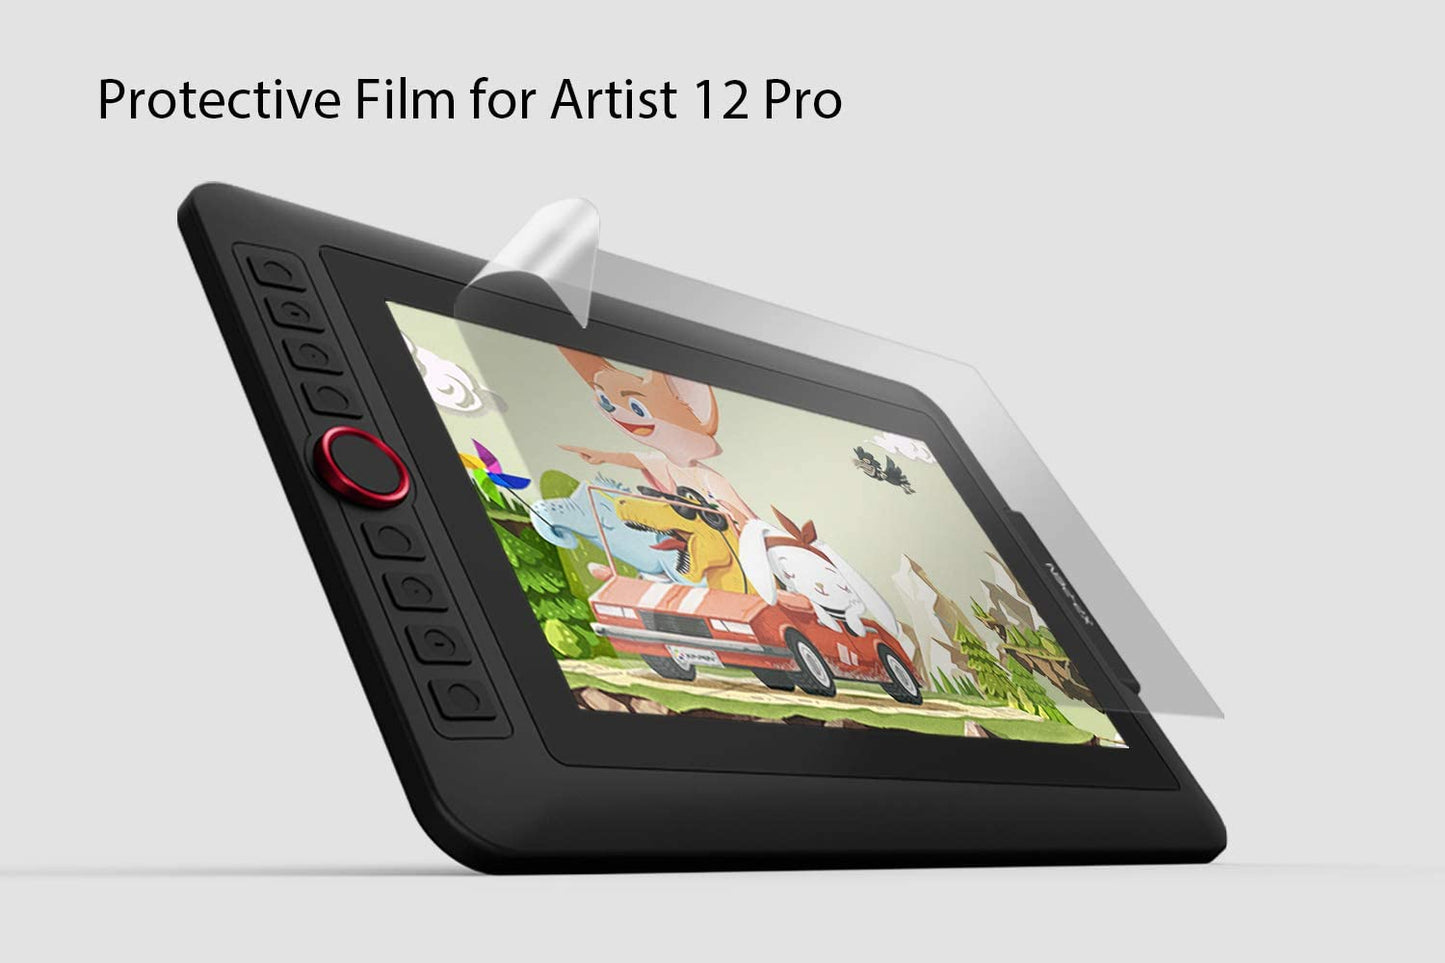 XP-Pen AC80 32cm x 18cm Transparent Protective Film for Artist 12 Pro Drawing Tablet 2pcs-1pack AC 80 AC-80